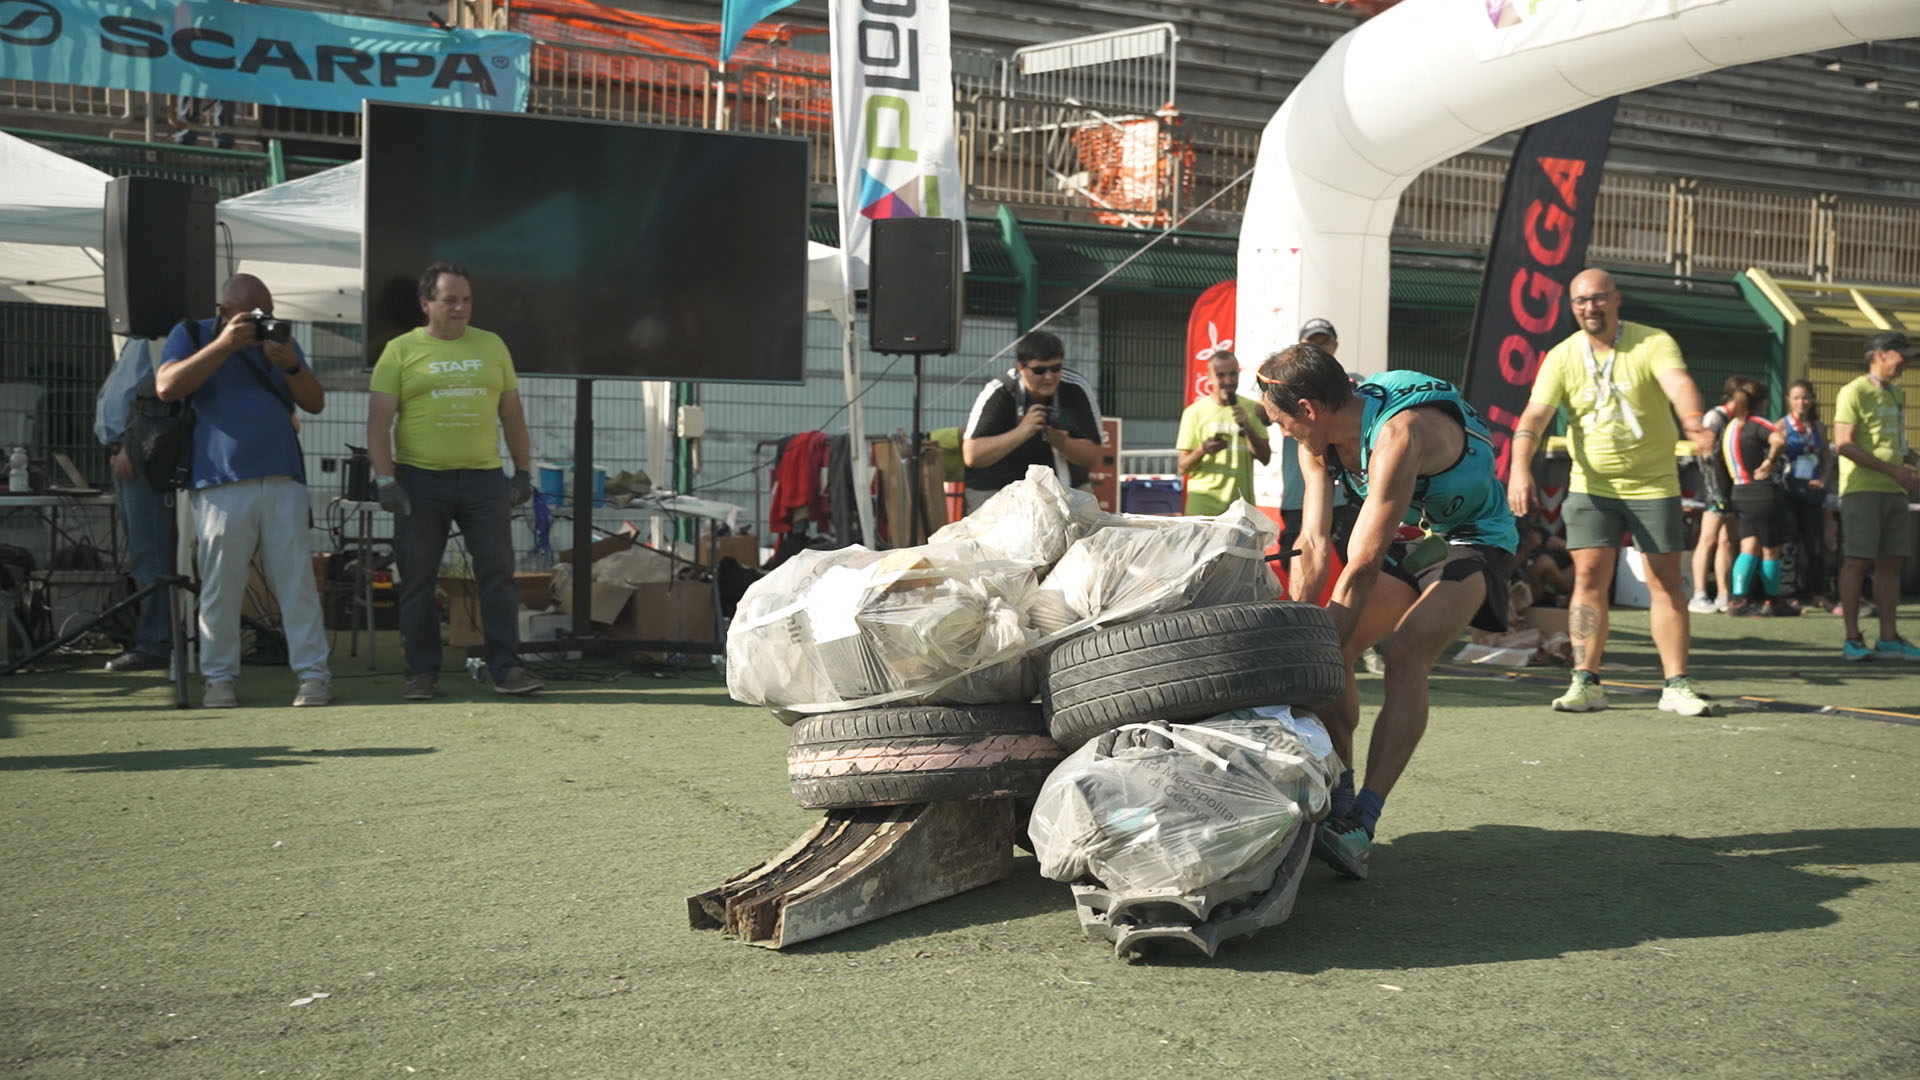 Campionato mondiale di plogging, grande successo a Genova per la corsa con i rifiuti